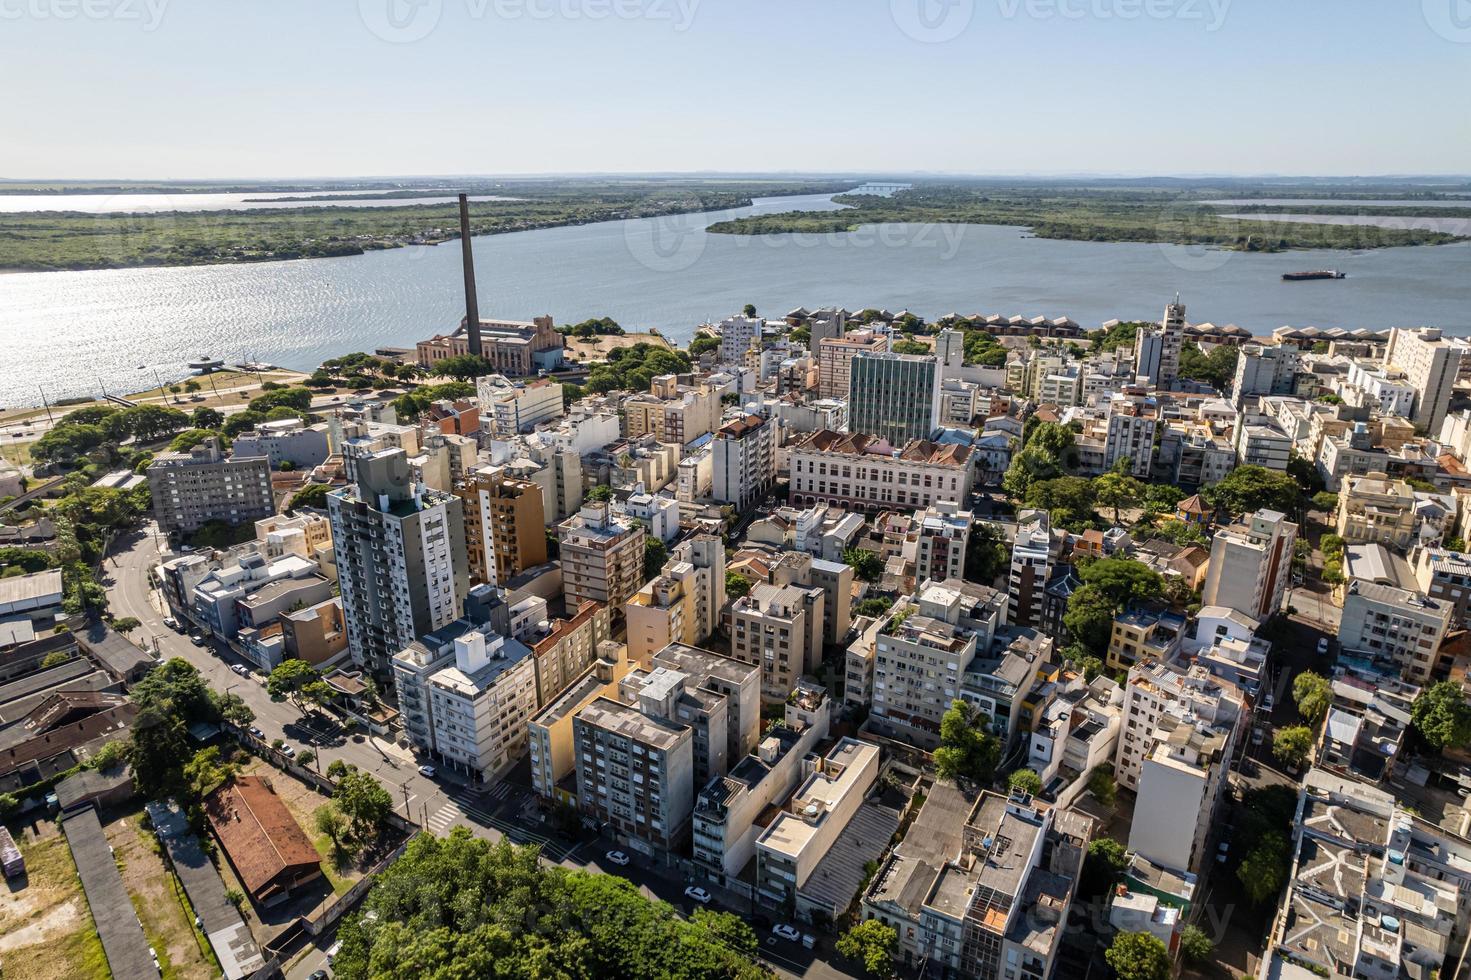 vista aérea de porto alegre, rs, brasil. foto aérea da maior cidade do sul do brasil.